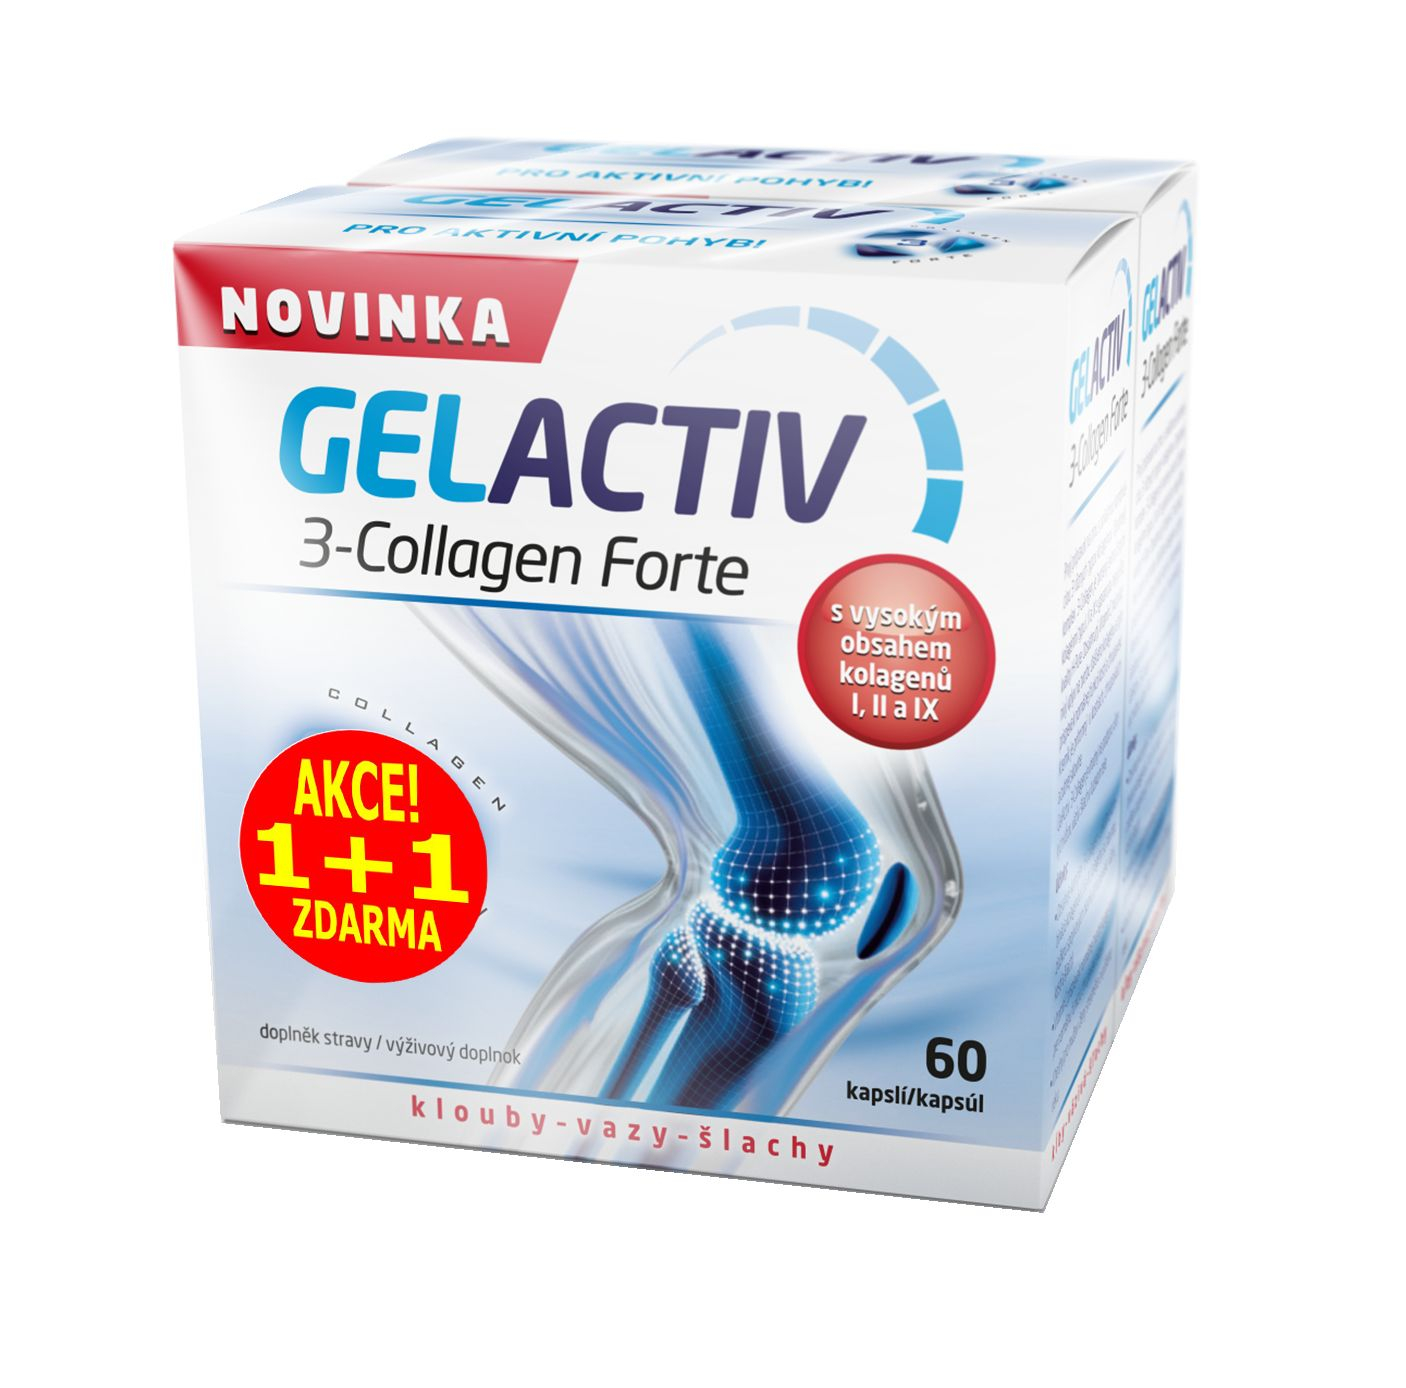 Gelactiv 3-Collagen Forte 60+60 kapslí Gelactiv